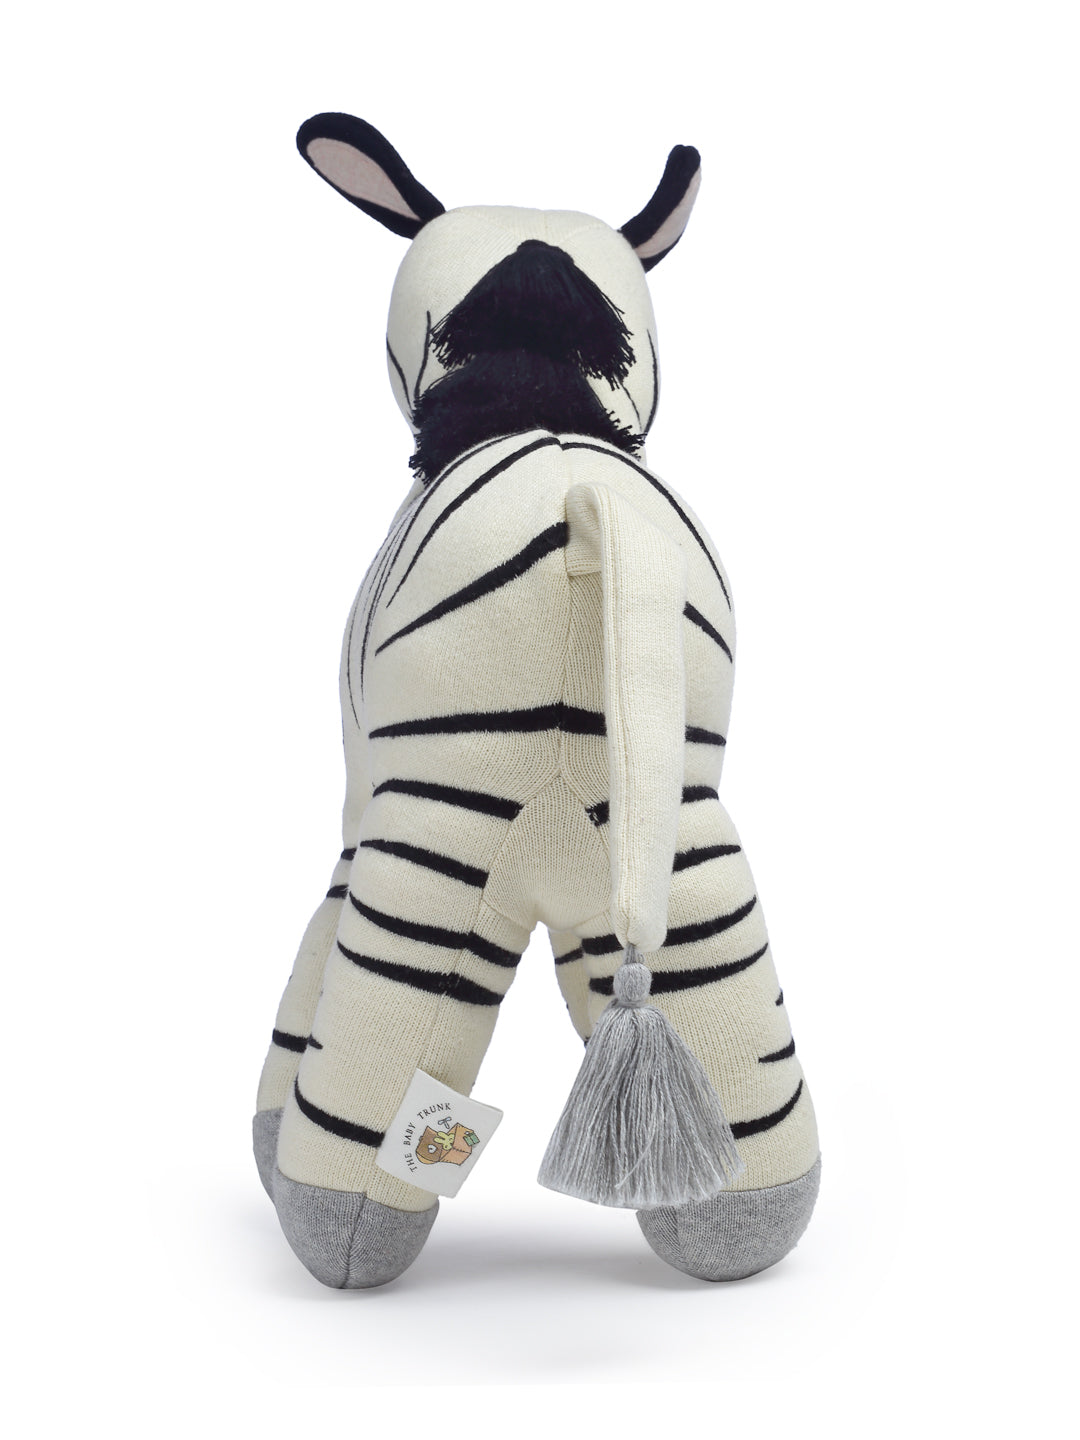 Zebra Baby Soft Toy Online